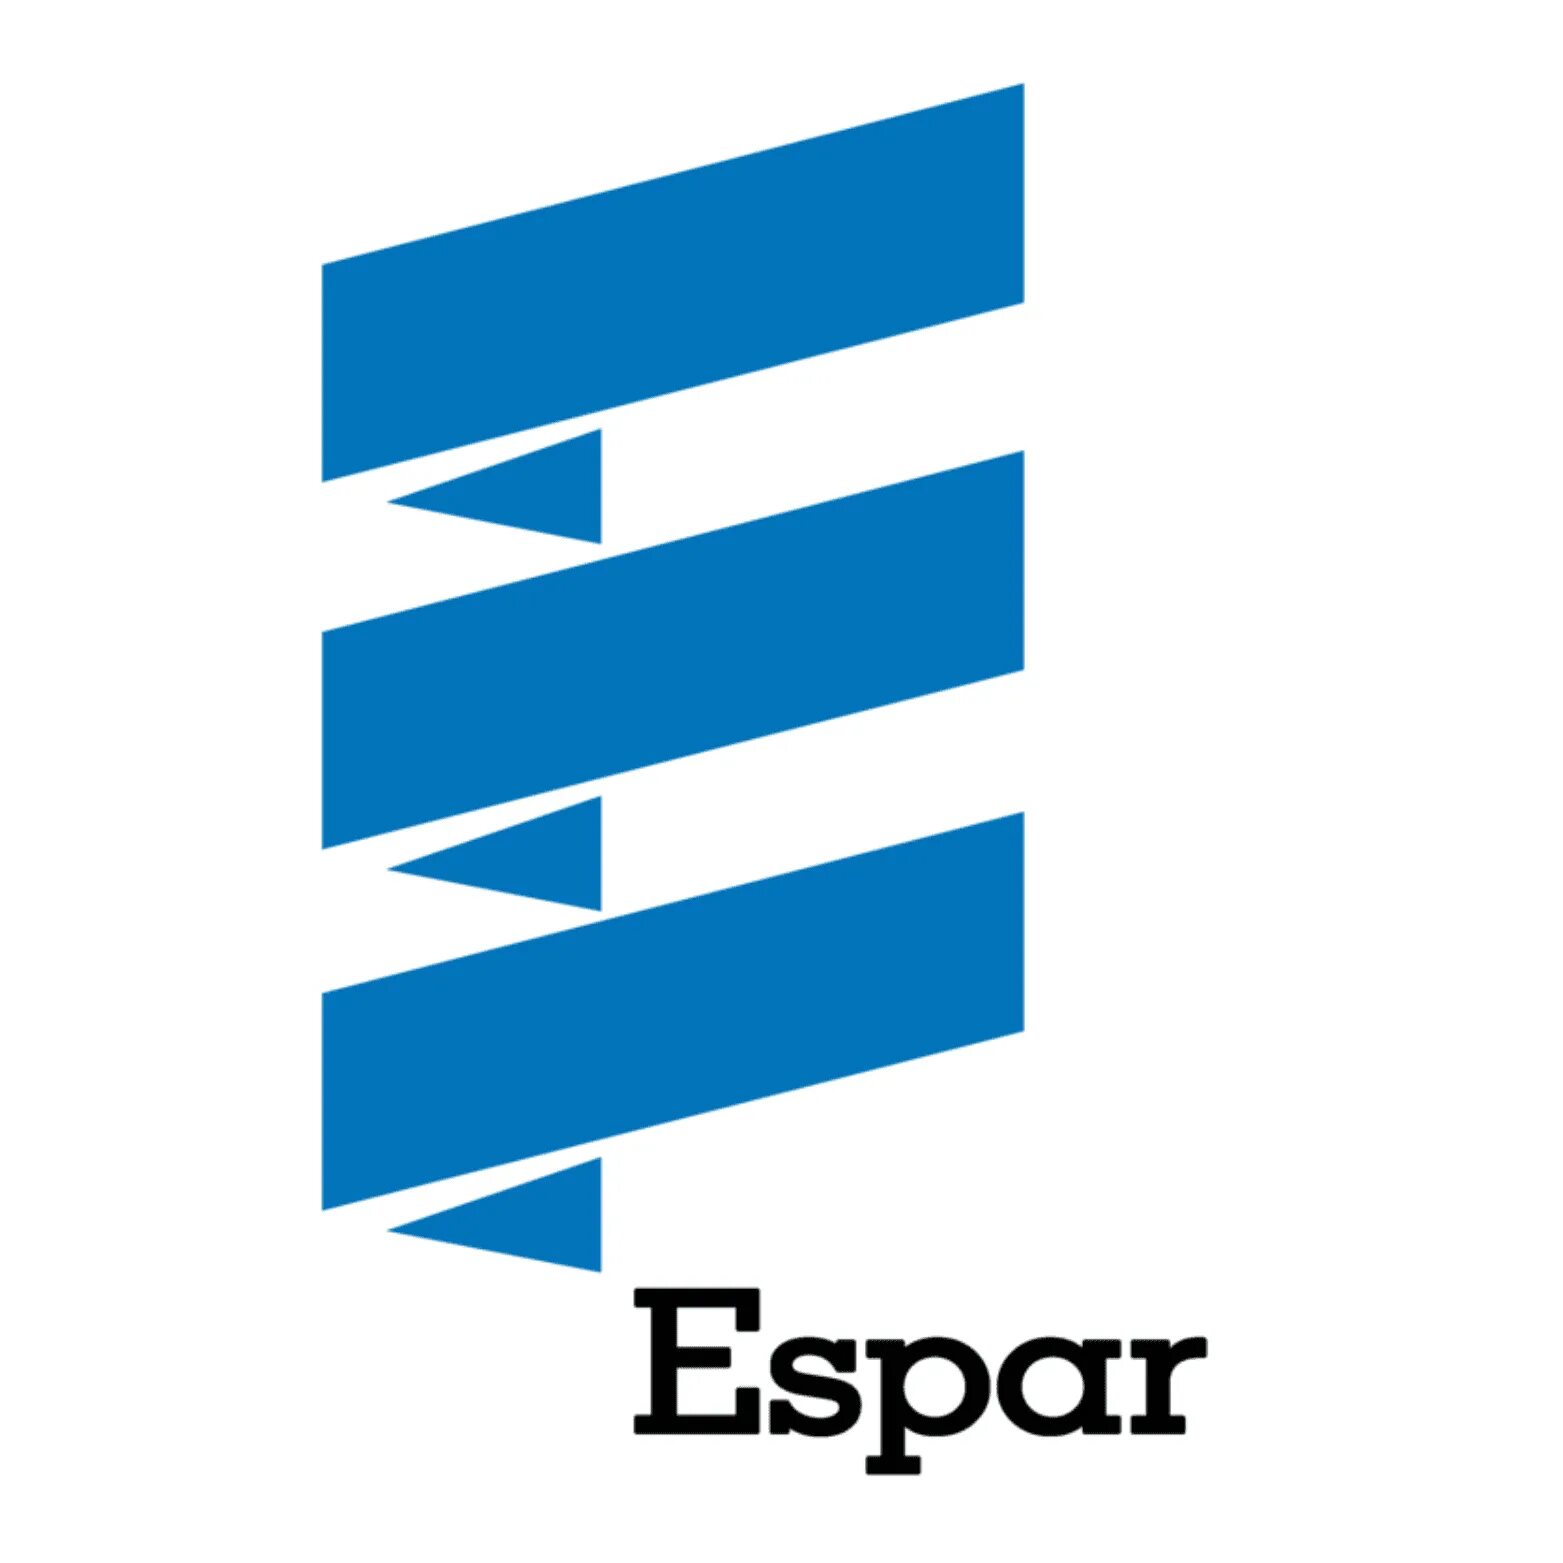 Eberspacher логотип. Эбершпехер логотип. Espar логотип. Вебасто лоотипна прозрачном фоне. Systems rus